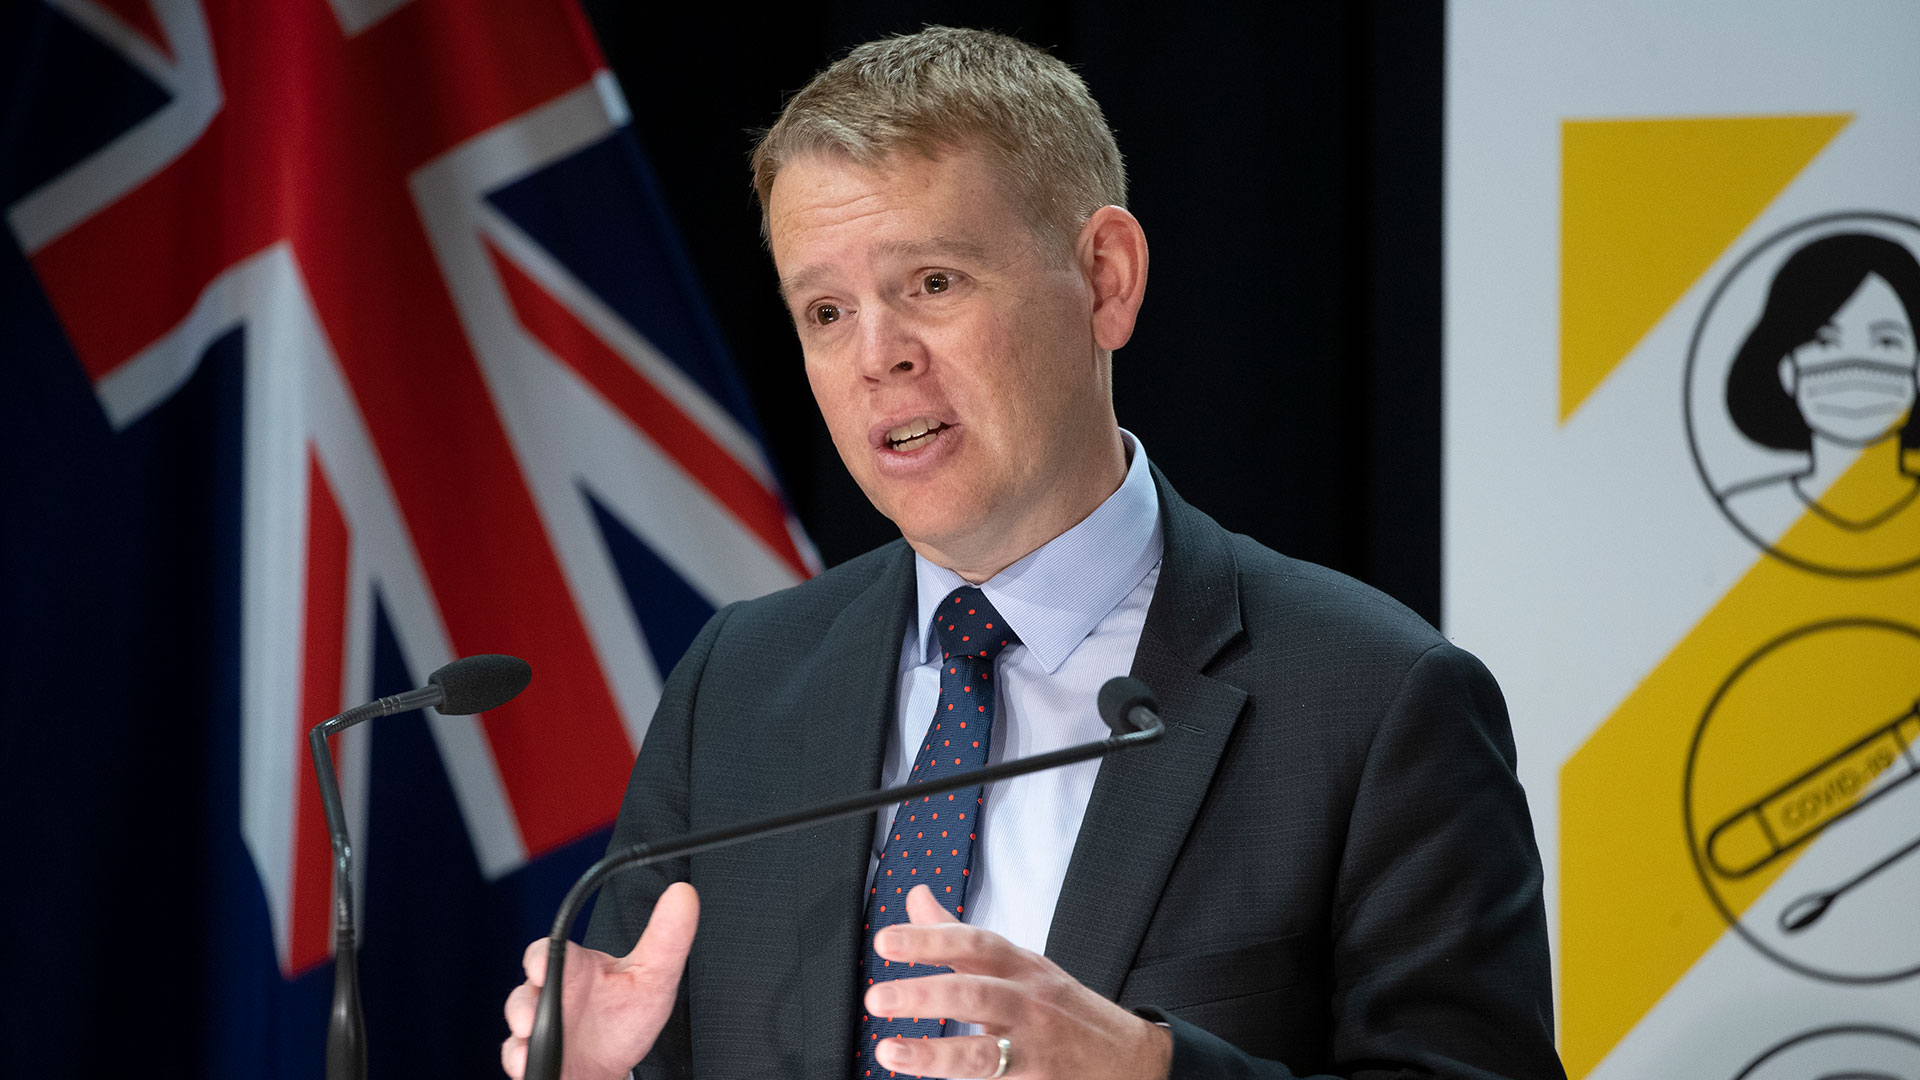 Chris Hipkins habla durante una actualización de la respuesta a COVID-19 en el Parlamento el 24 de noviembre de 2021 en Wellington, Nueva Zelanda. (Foto de Mark Mitchell - Pool/Getty Images/Archivo)